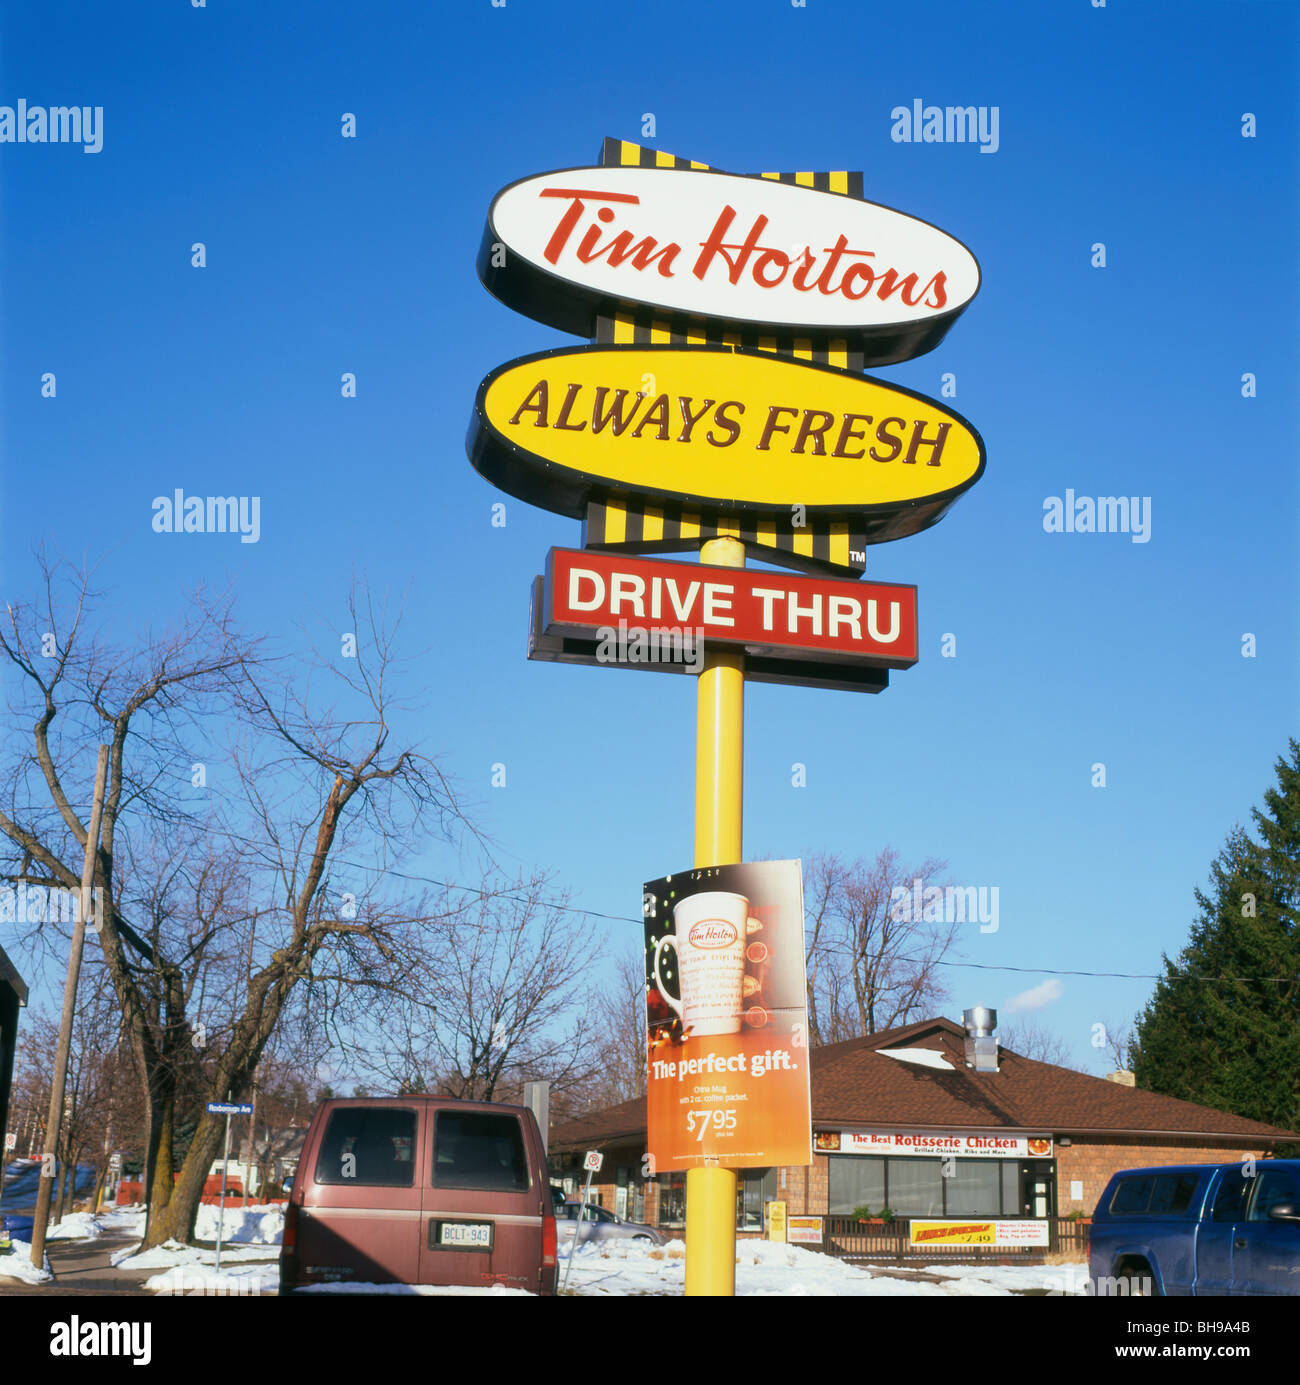 Signe de Tim Hortons drive-thru beignerie café franchise magasin à Ridgeway Ontario Canada Kathy DEWITT Banque D'Images